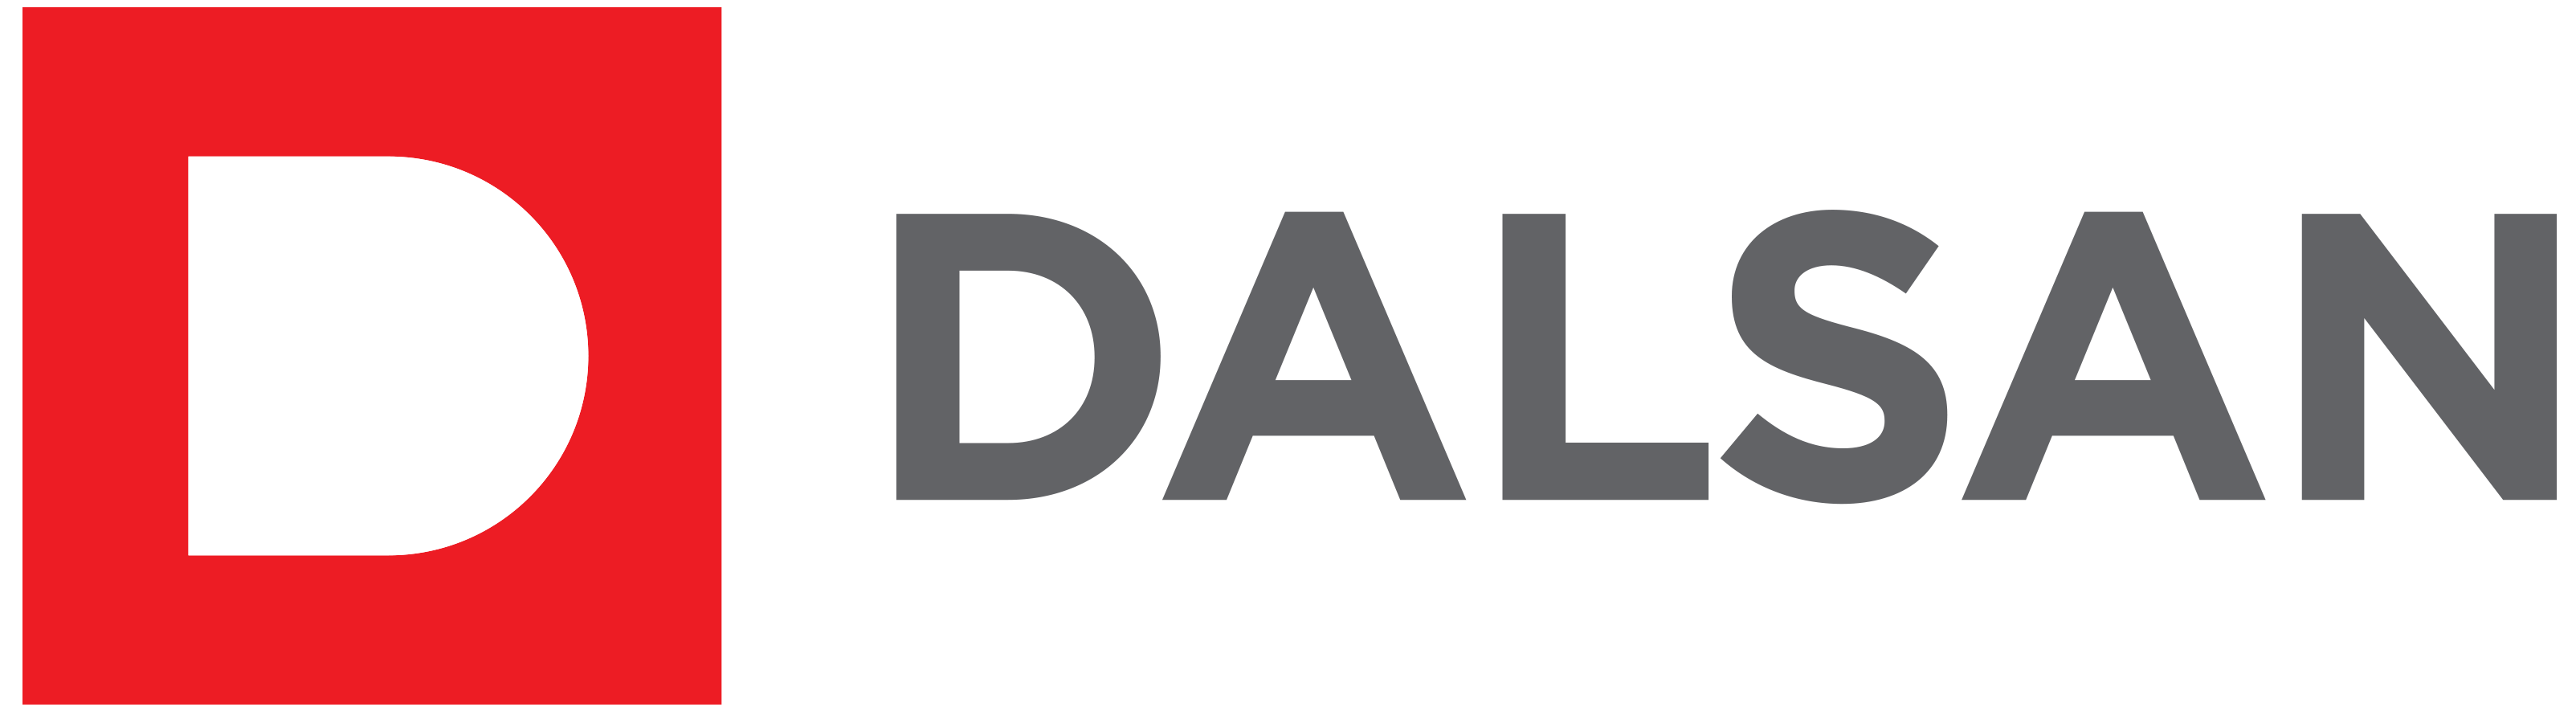 Dalsan Alçı Logo